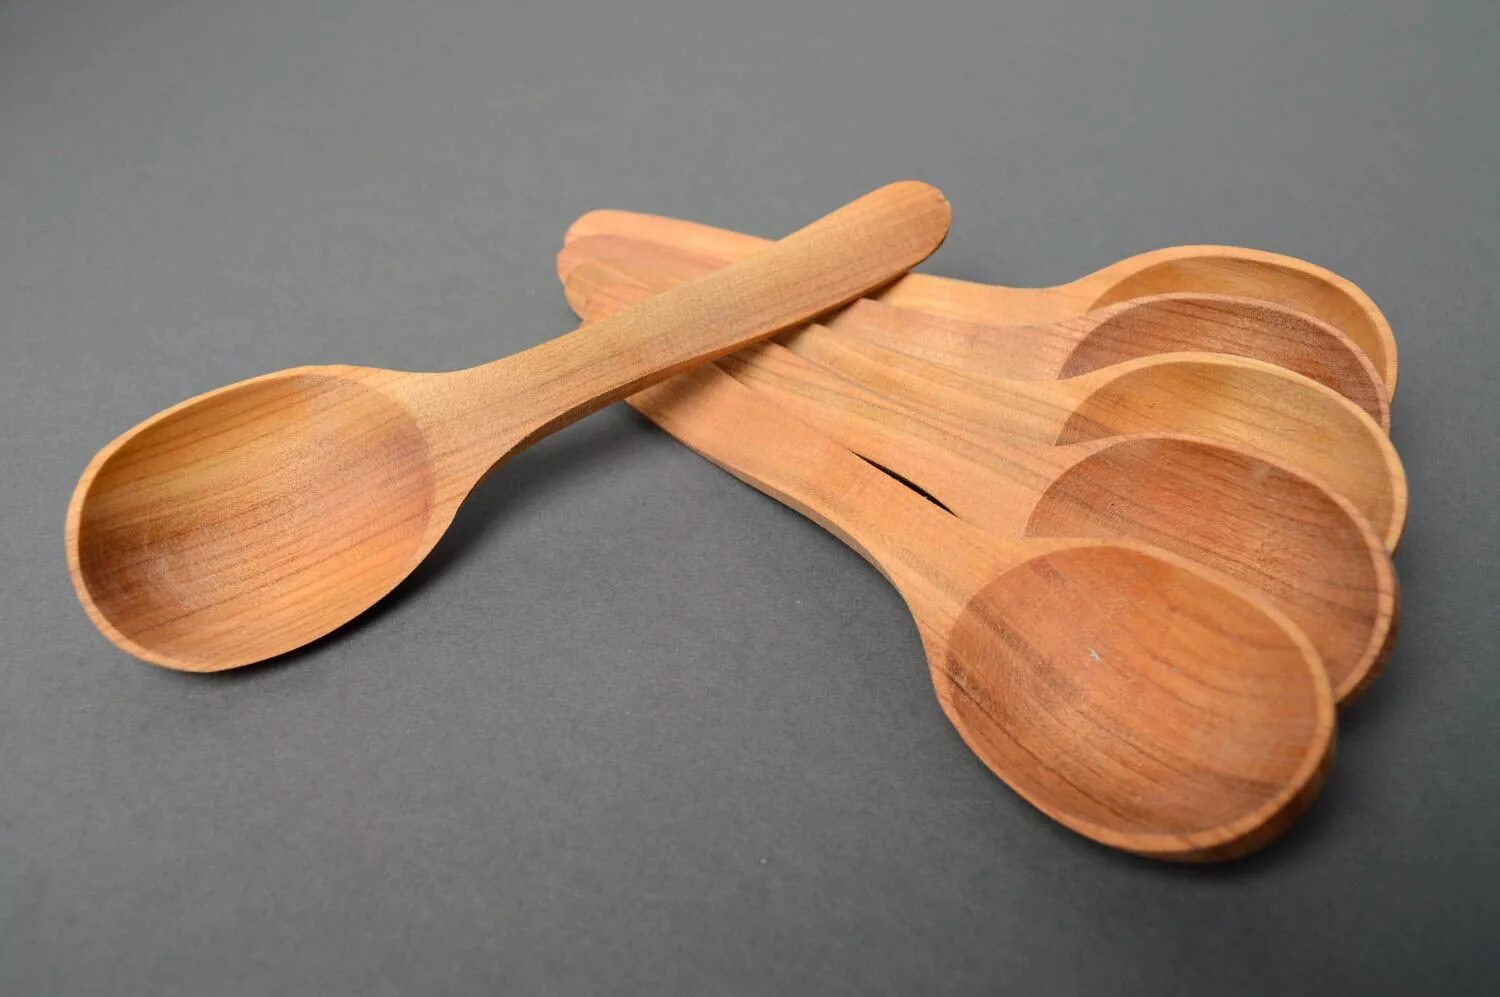 Wooden spoon. Деревянная ложка. Большая деревянная ложка. Плоская деревянная ложка. Ложка деревянная с длинной ручкой.